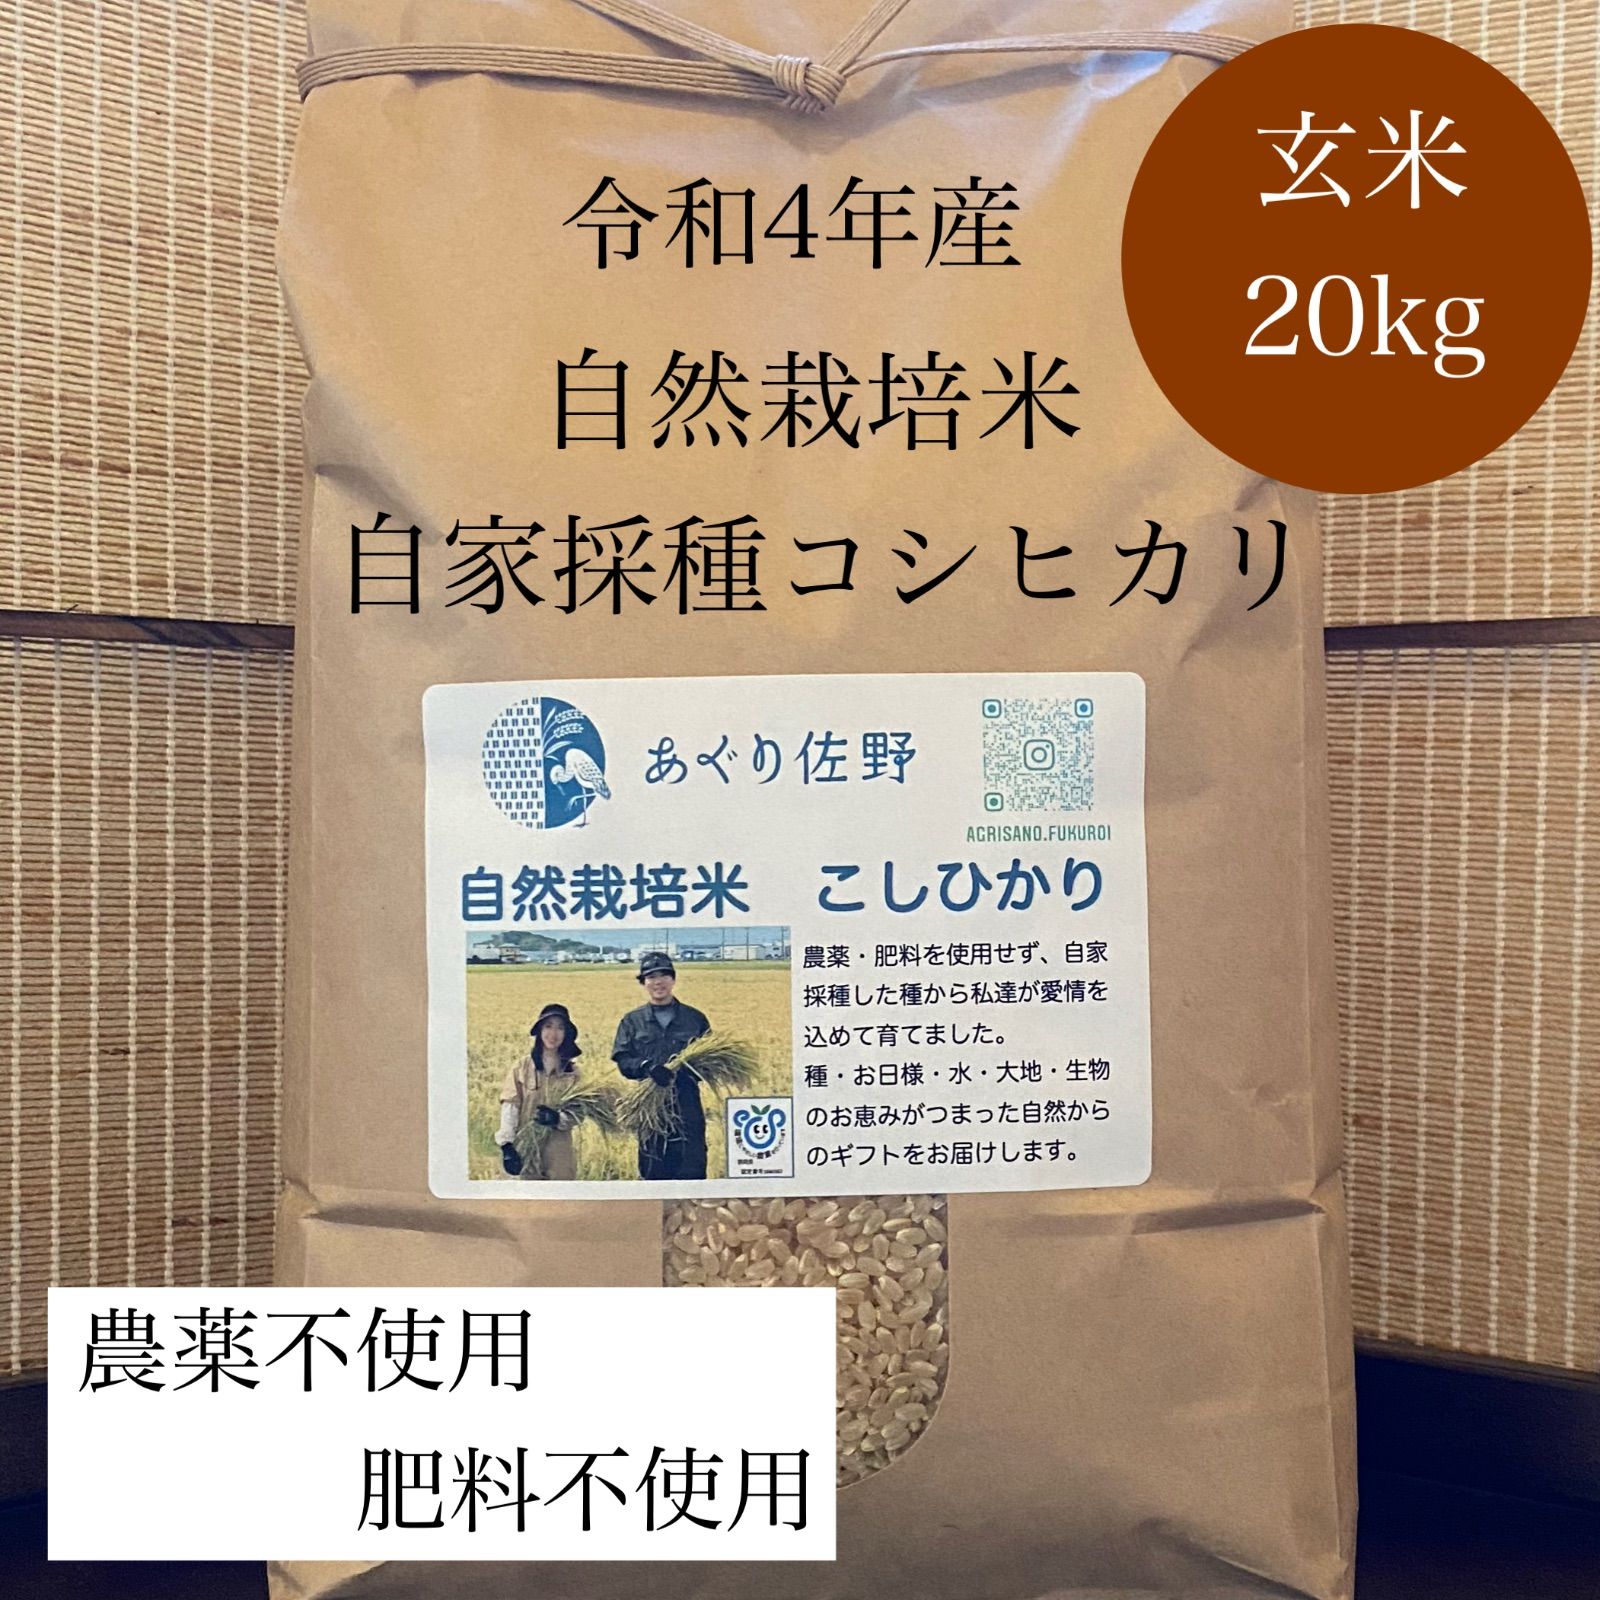 食品/飲料/酒令和元年産コシヒカリ玄米20kg